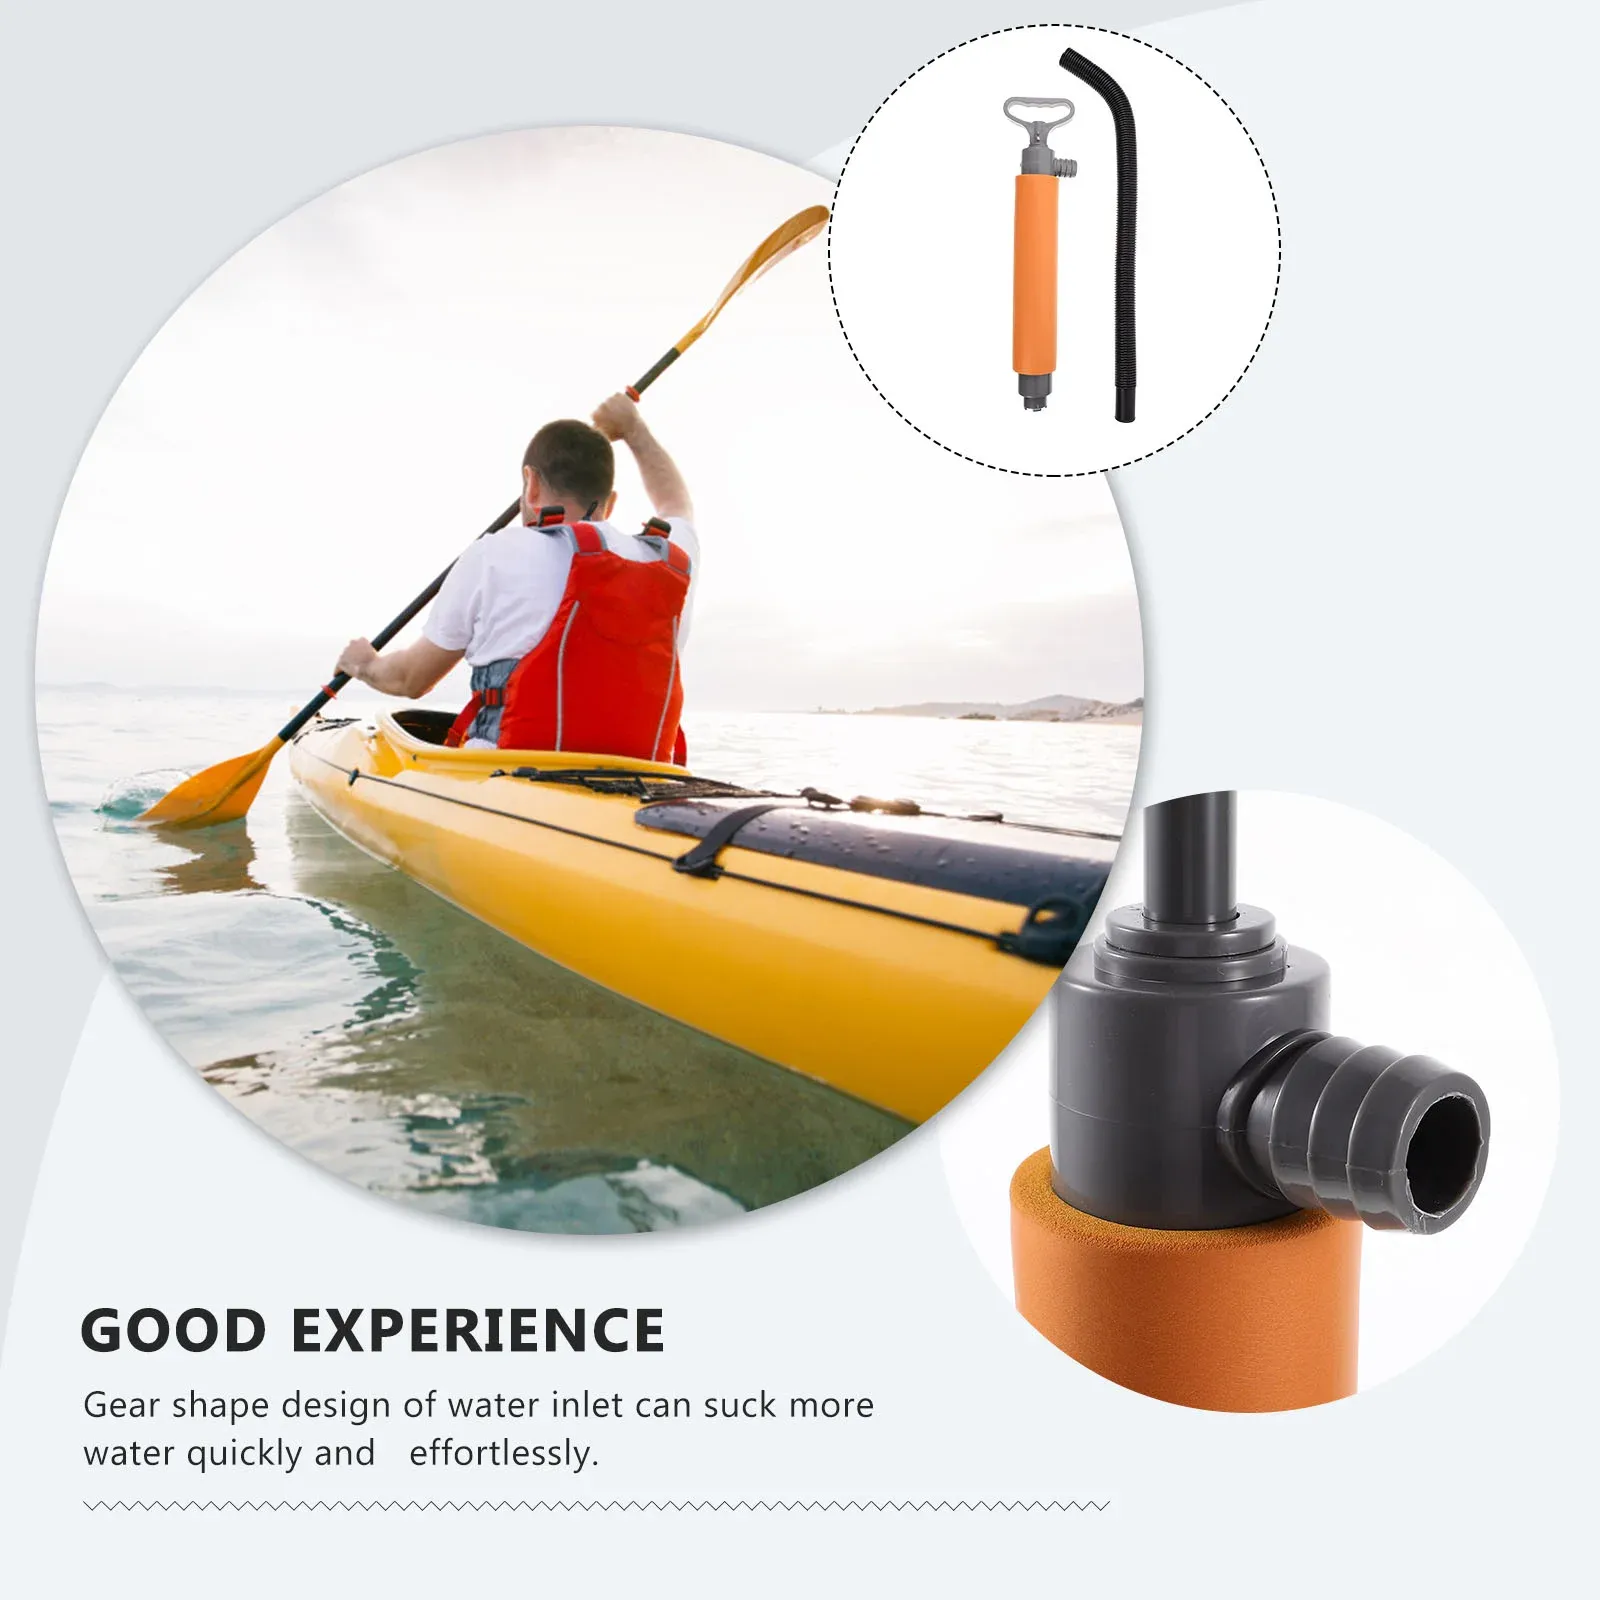 Pompa a manuale della pompa per bulge a mano pompa per bombole marina per kayaks piccole barche accessori ()